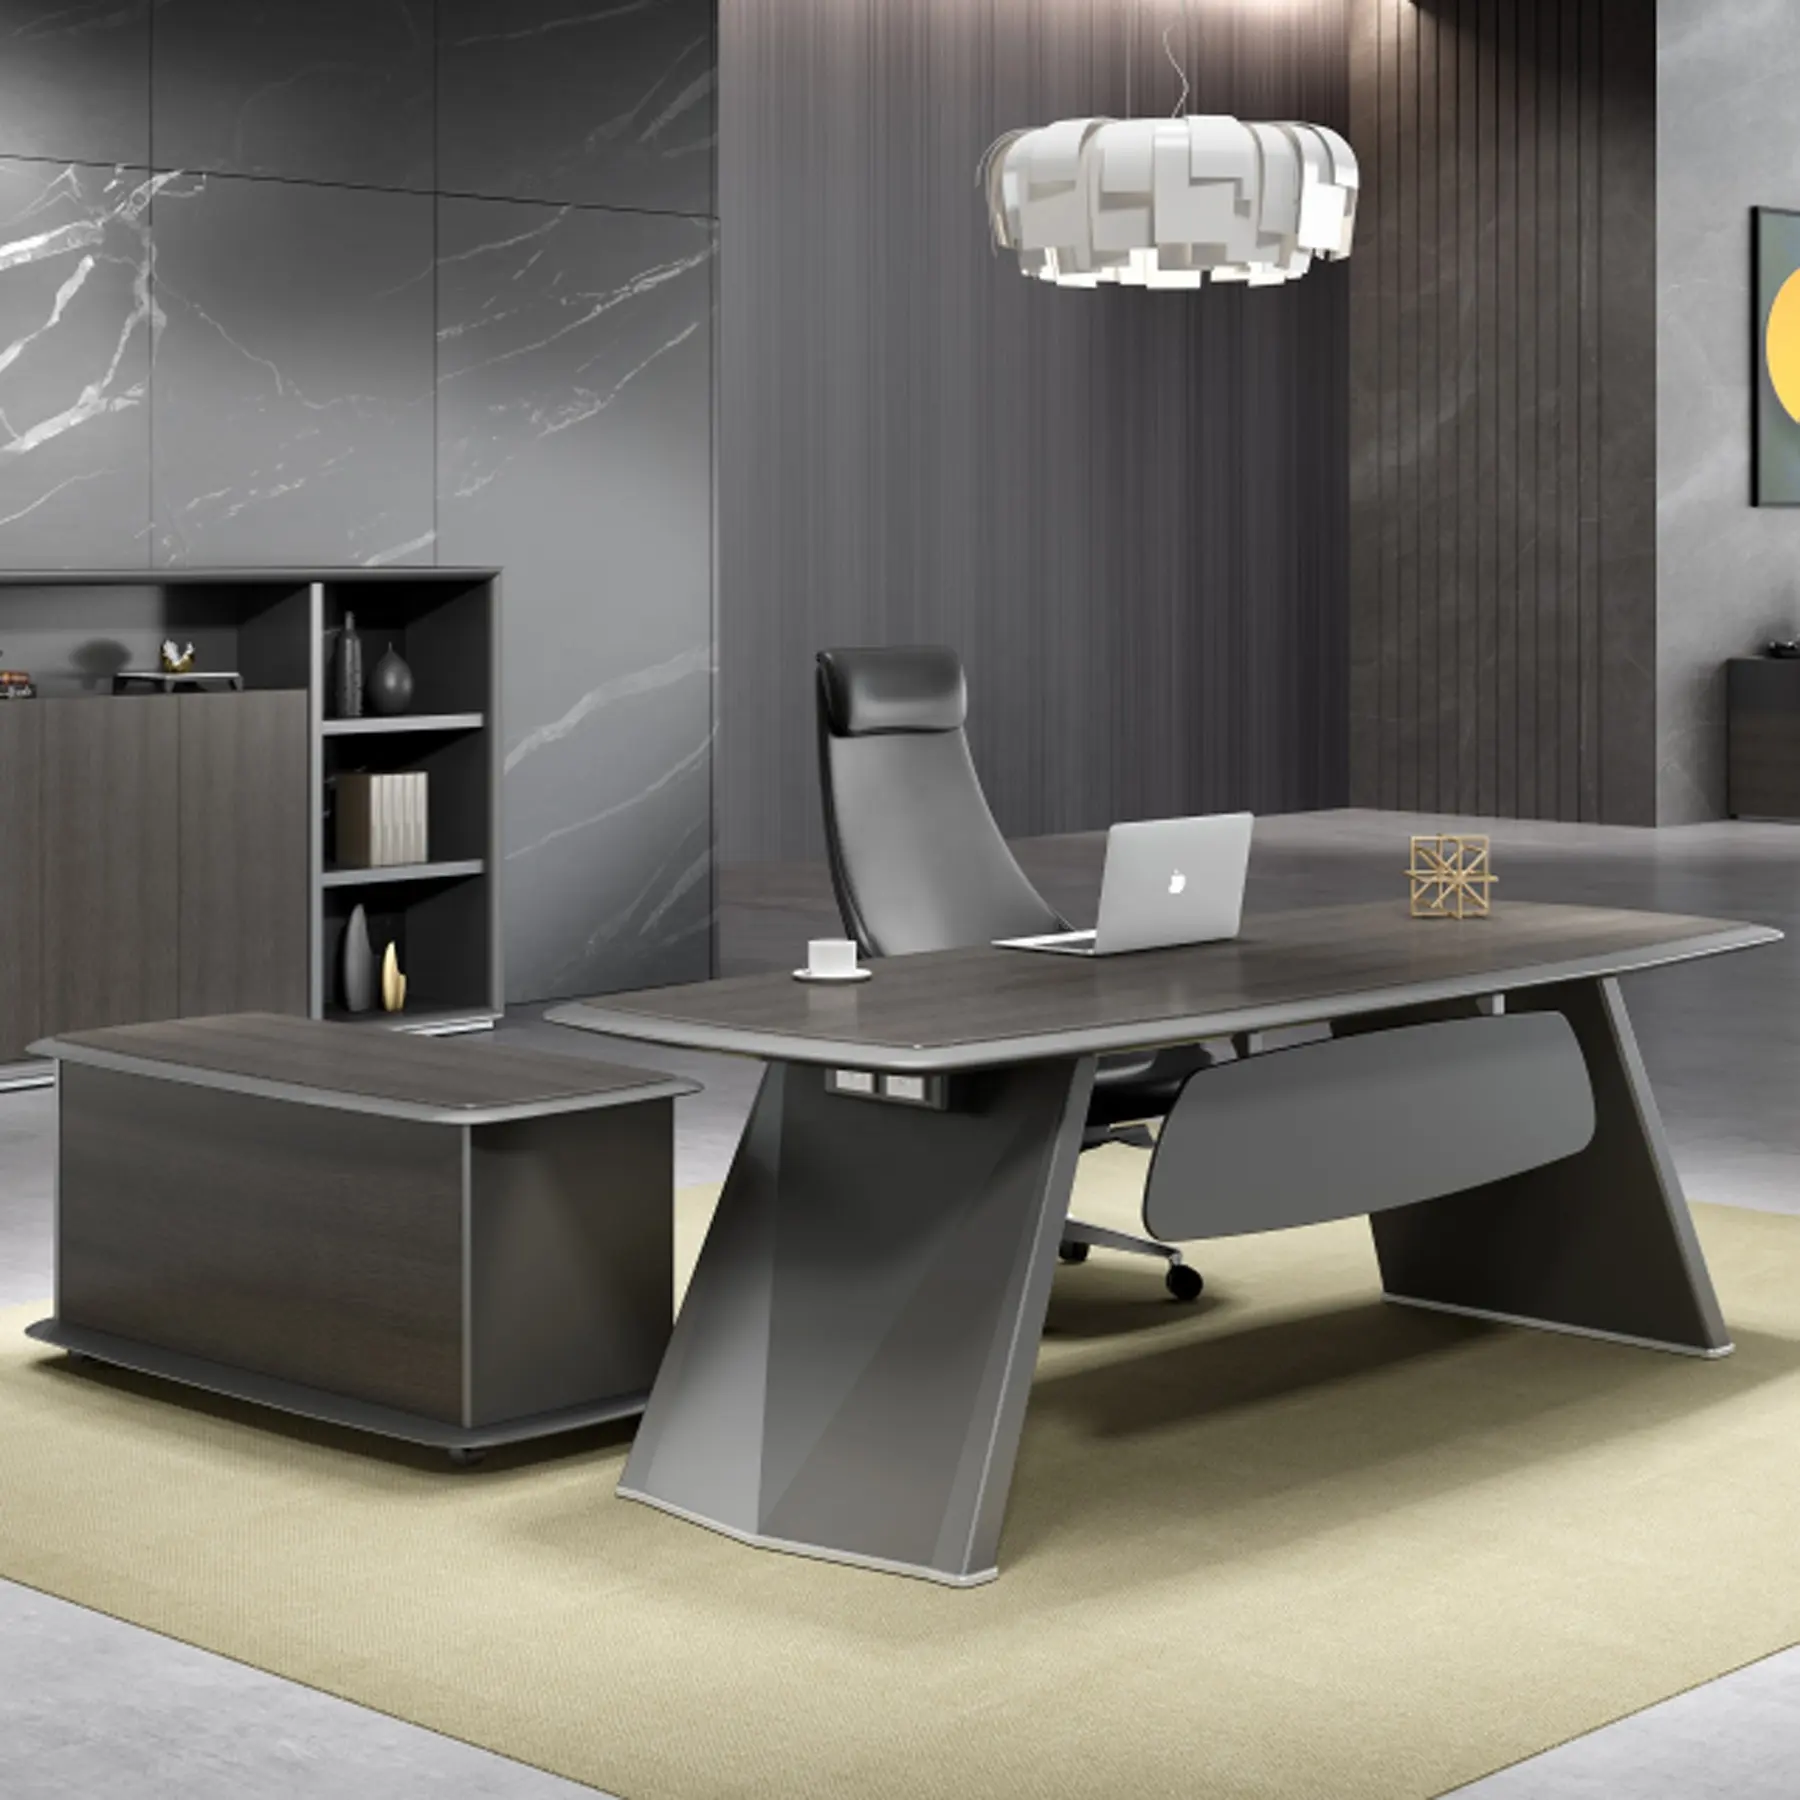 Yüksek düzey Modern tasarım ahşap kaplama ofis mobilyaları direktörü yöneticisi yönetici ofis masası